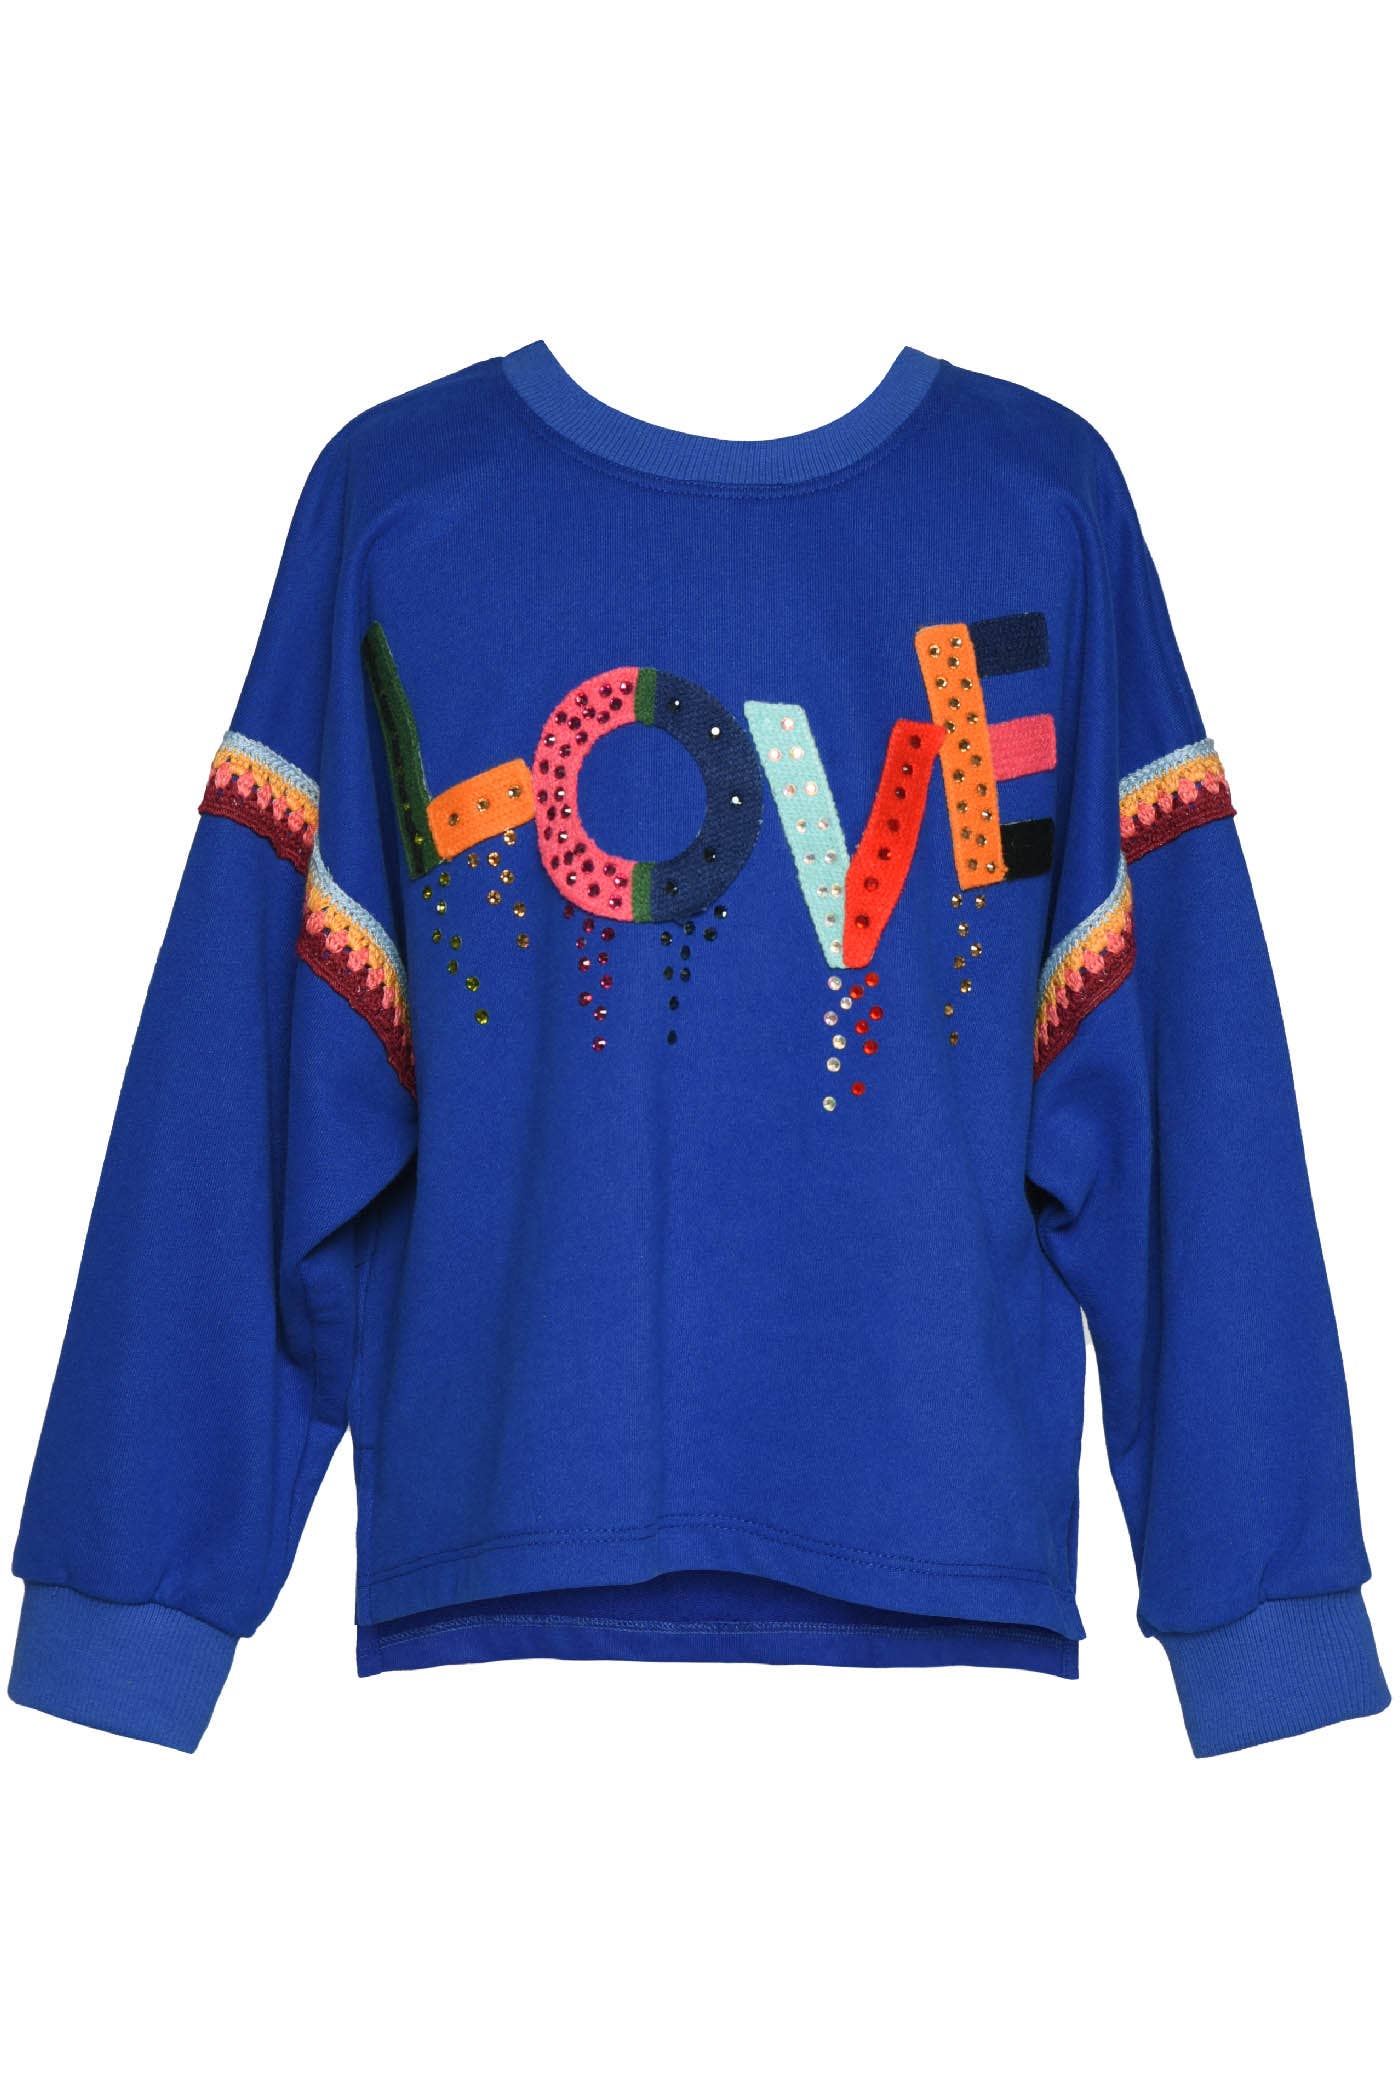 Love Crocheted Trim Tween Sweatshirt - Milly's Boutique